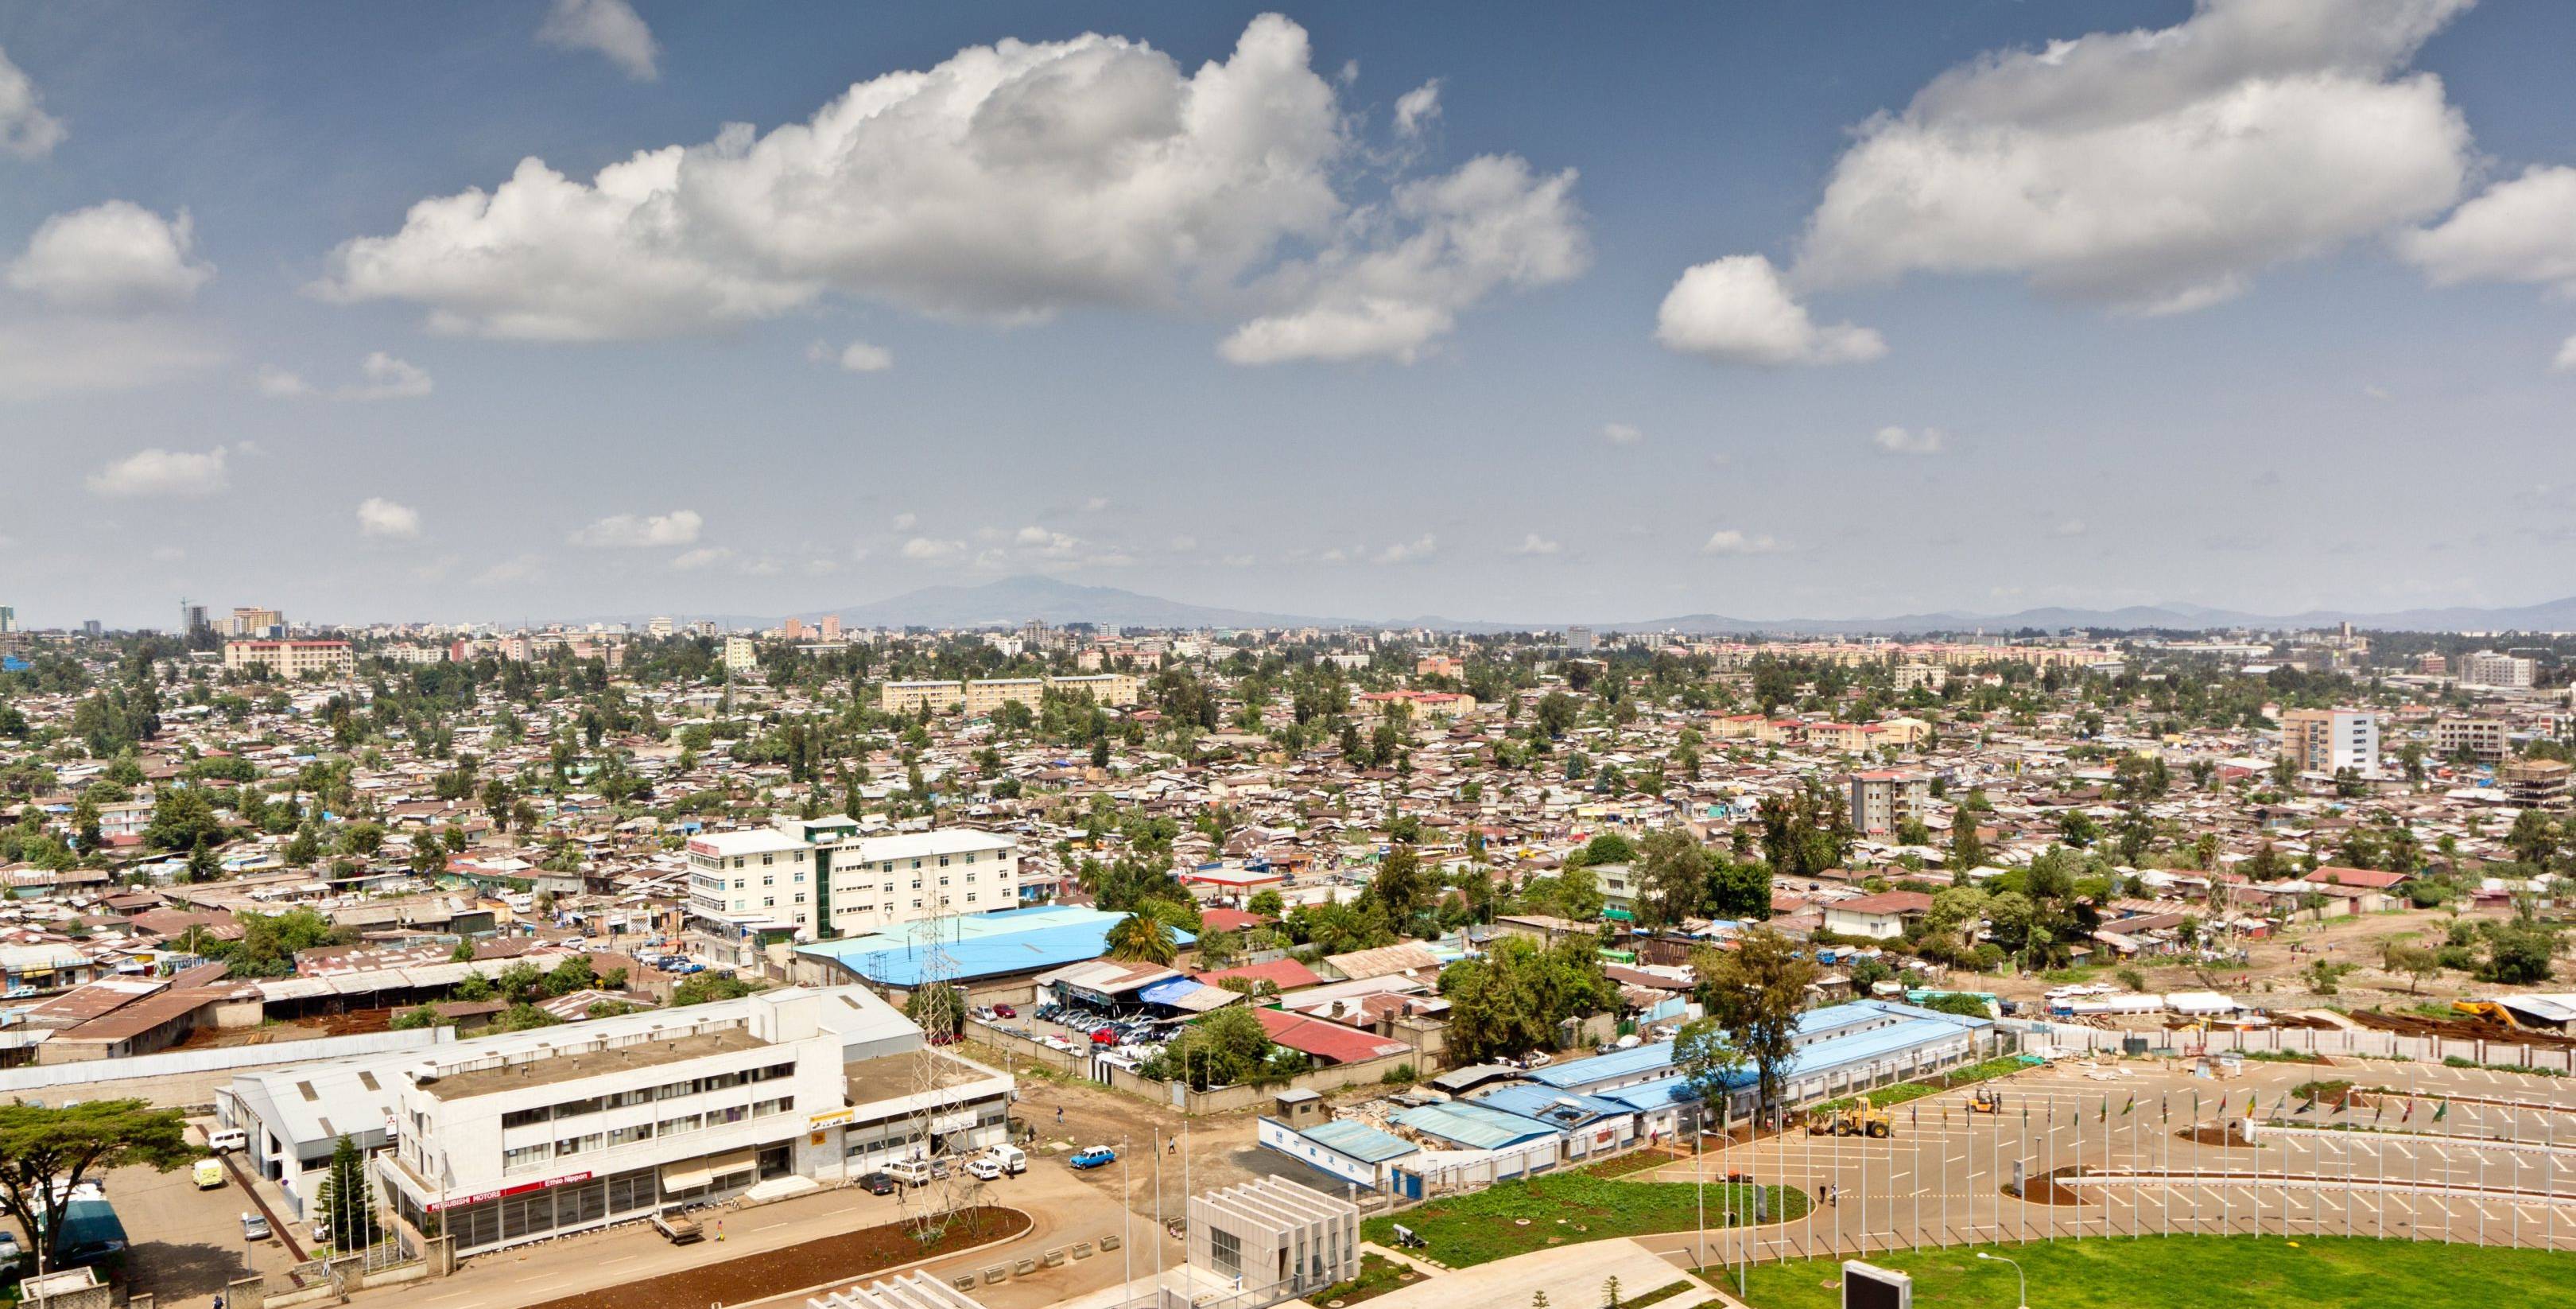 ¡Bienvenidos a Etiopía! Visita a Addis Abeba y Meskel